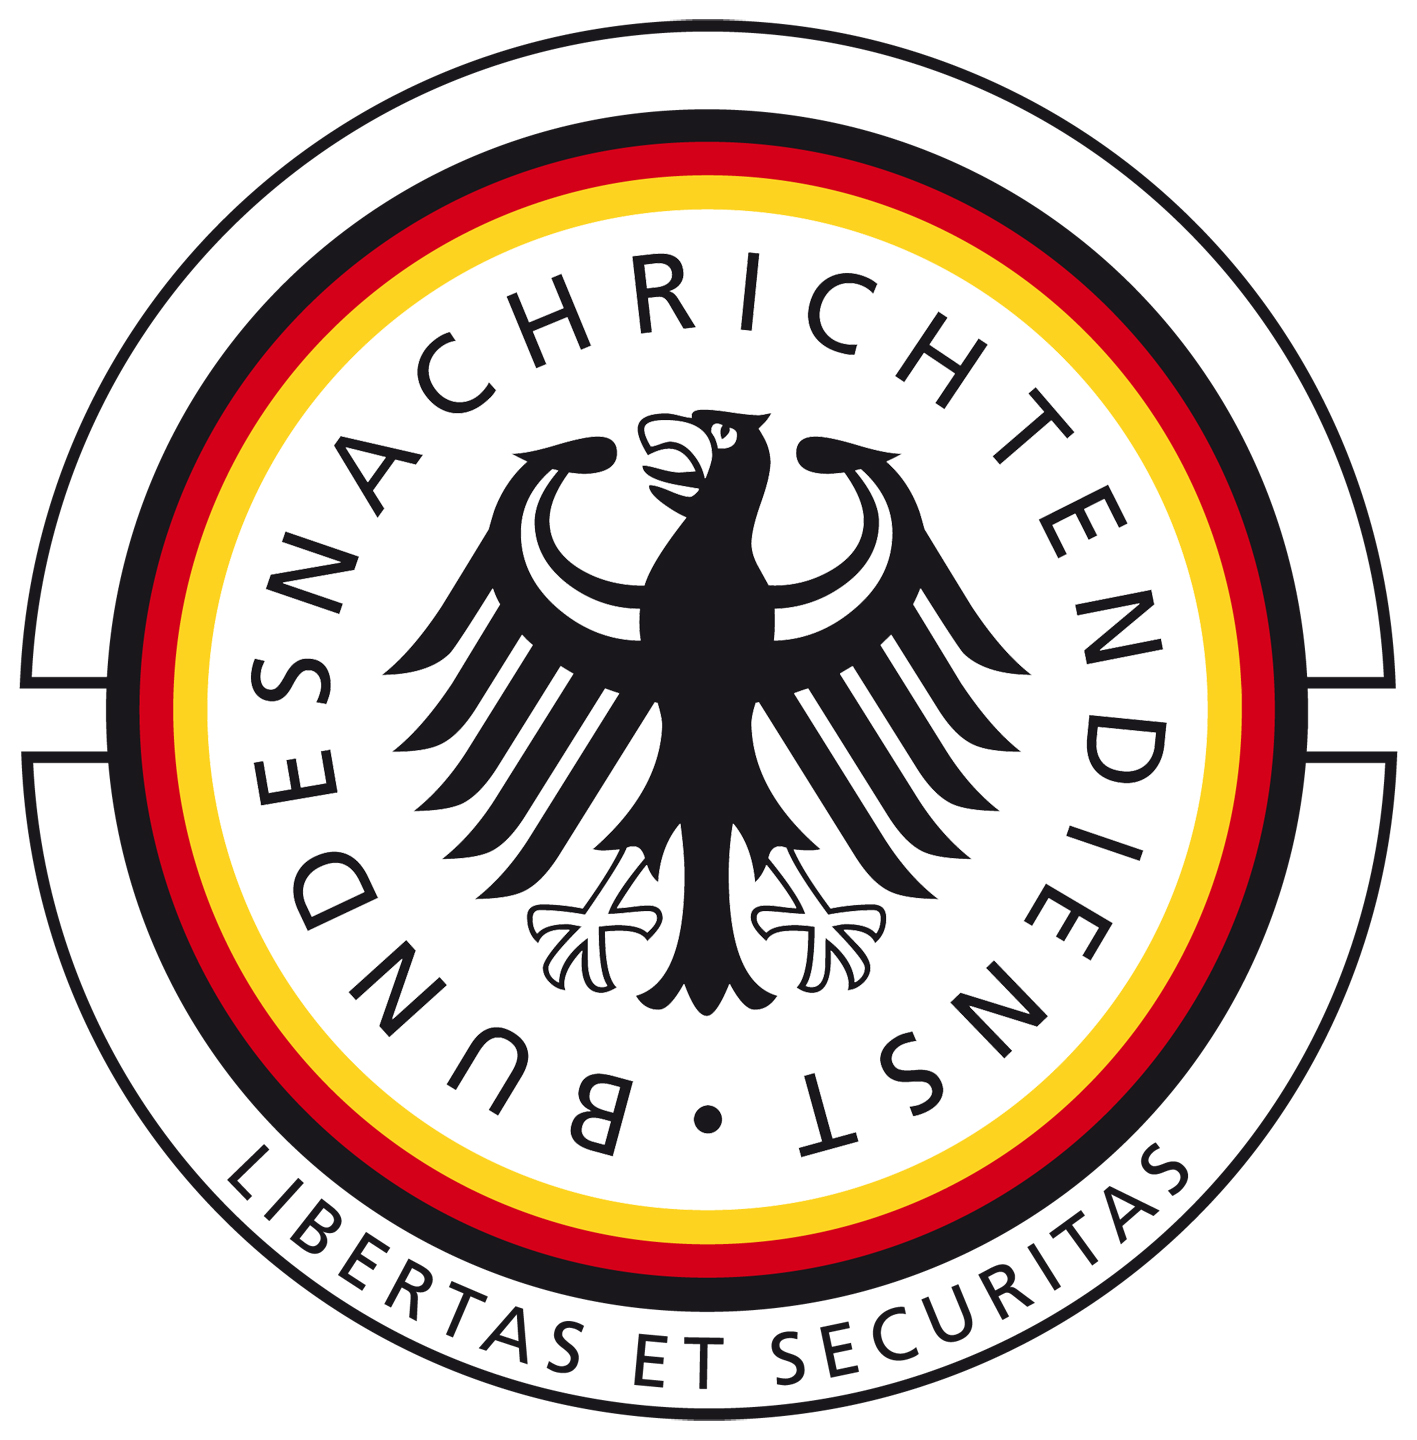 Bundesnachrichtendienst Logo Image Download Logo Logowiki Net